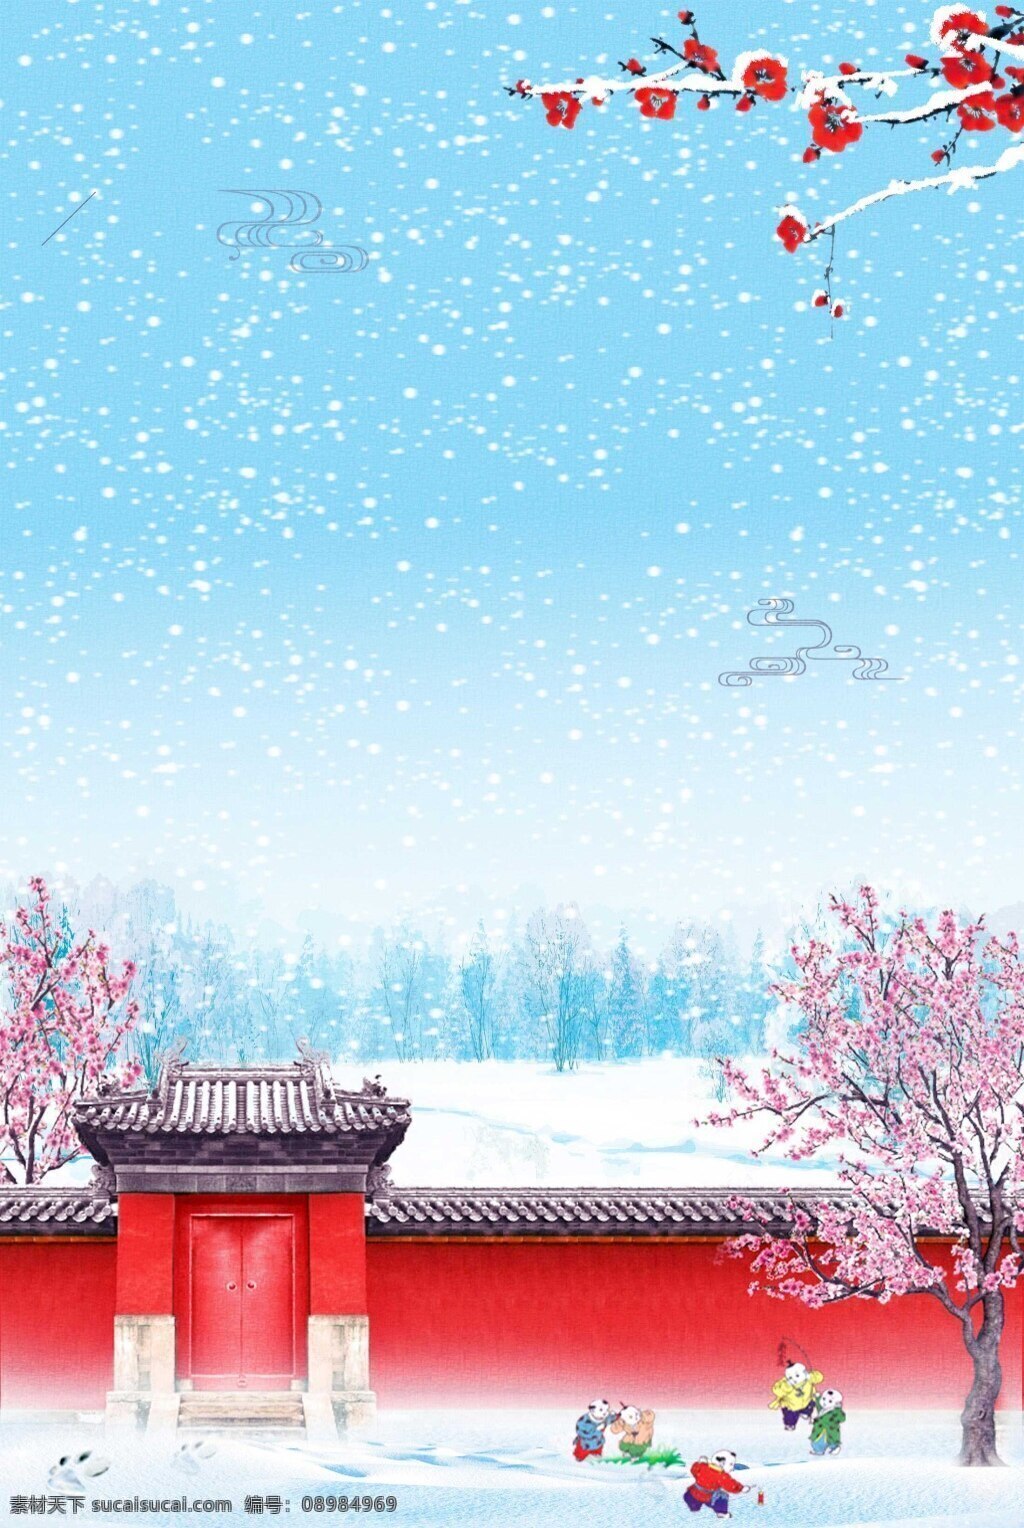 喜庆 春节 红墙 背景 浪漫 雪花 红梅 海报 广告